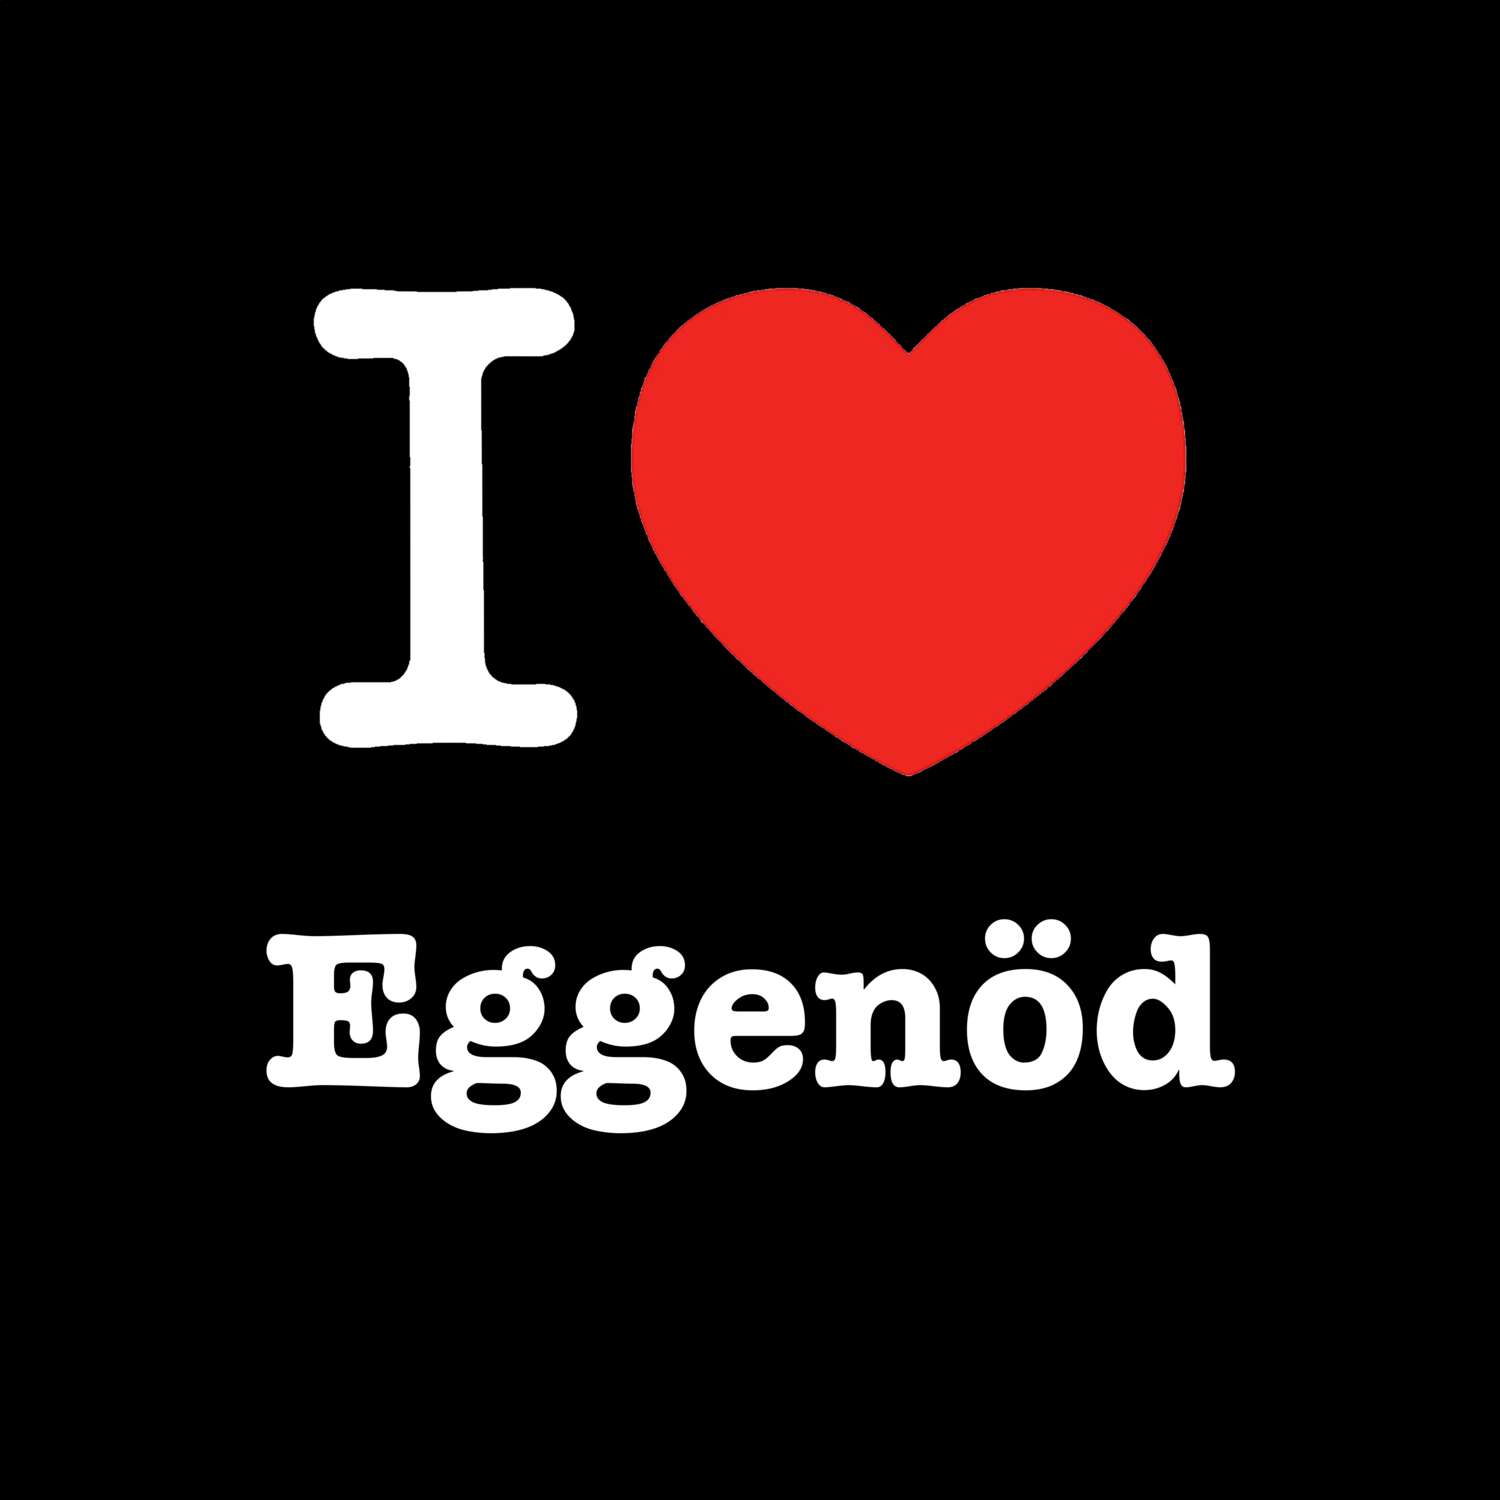 Eggenöd T-Shirt »I love«